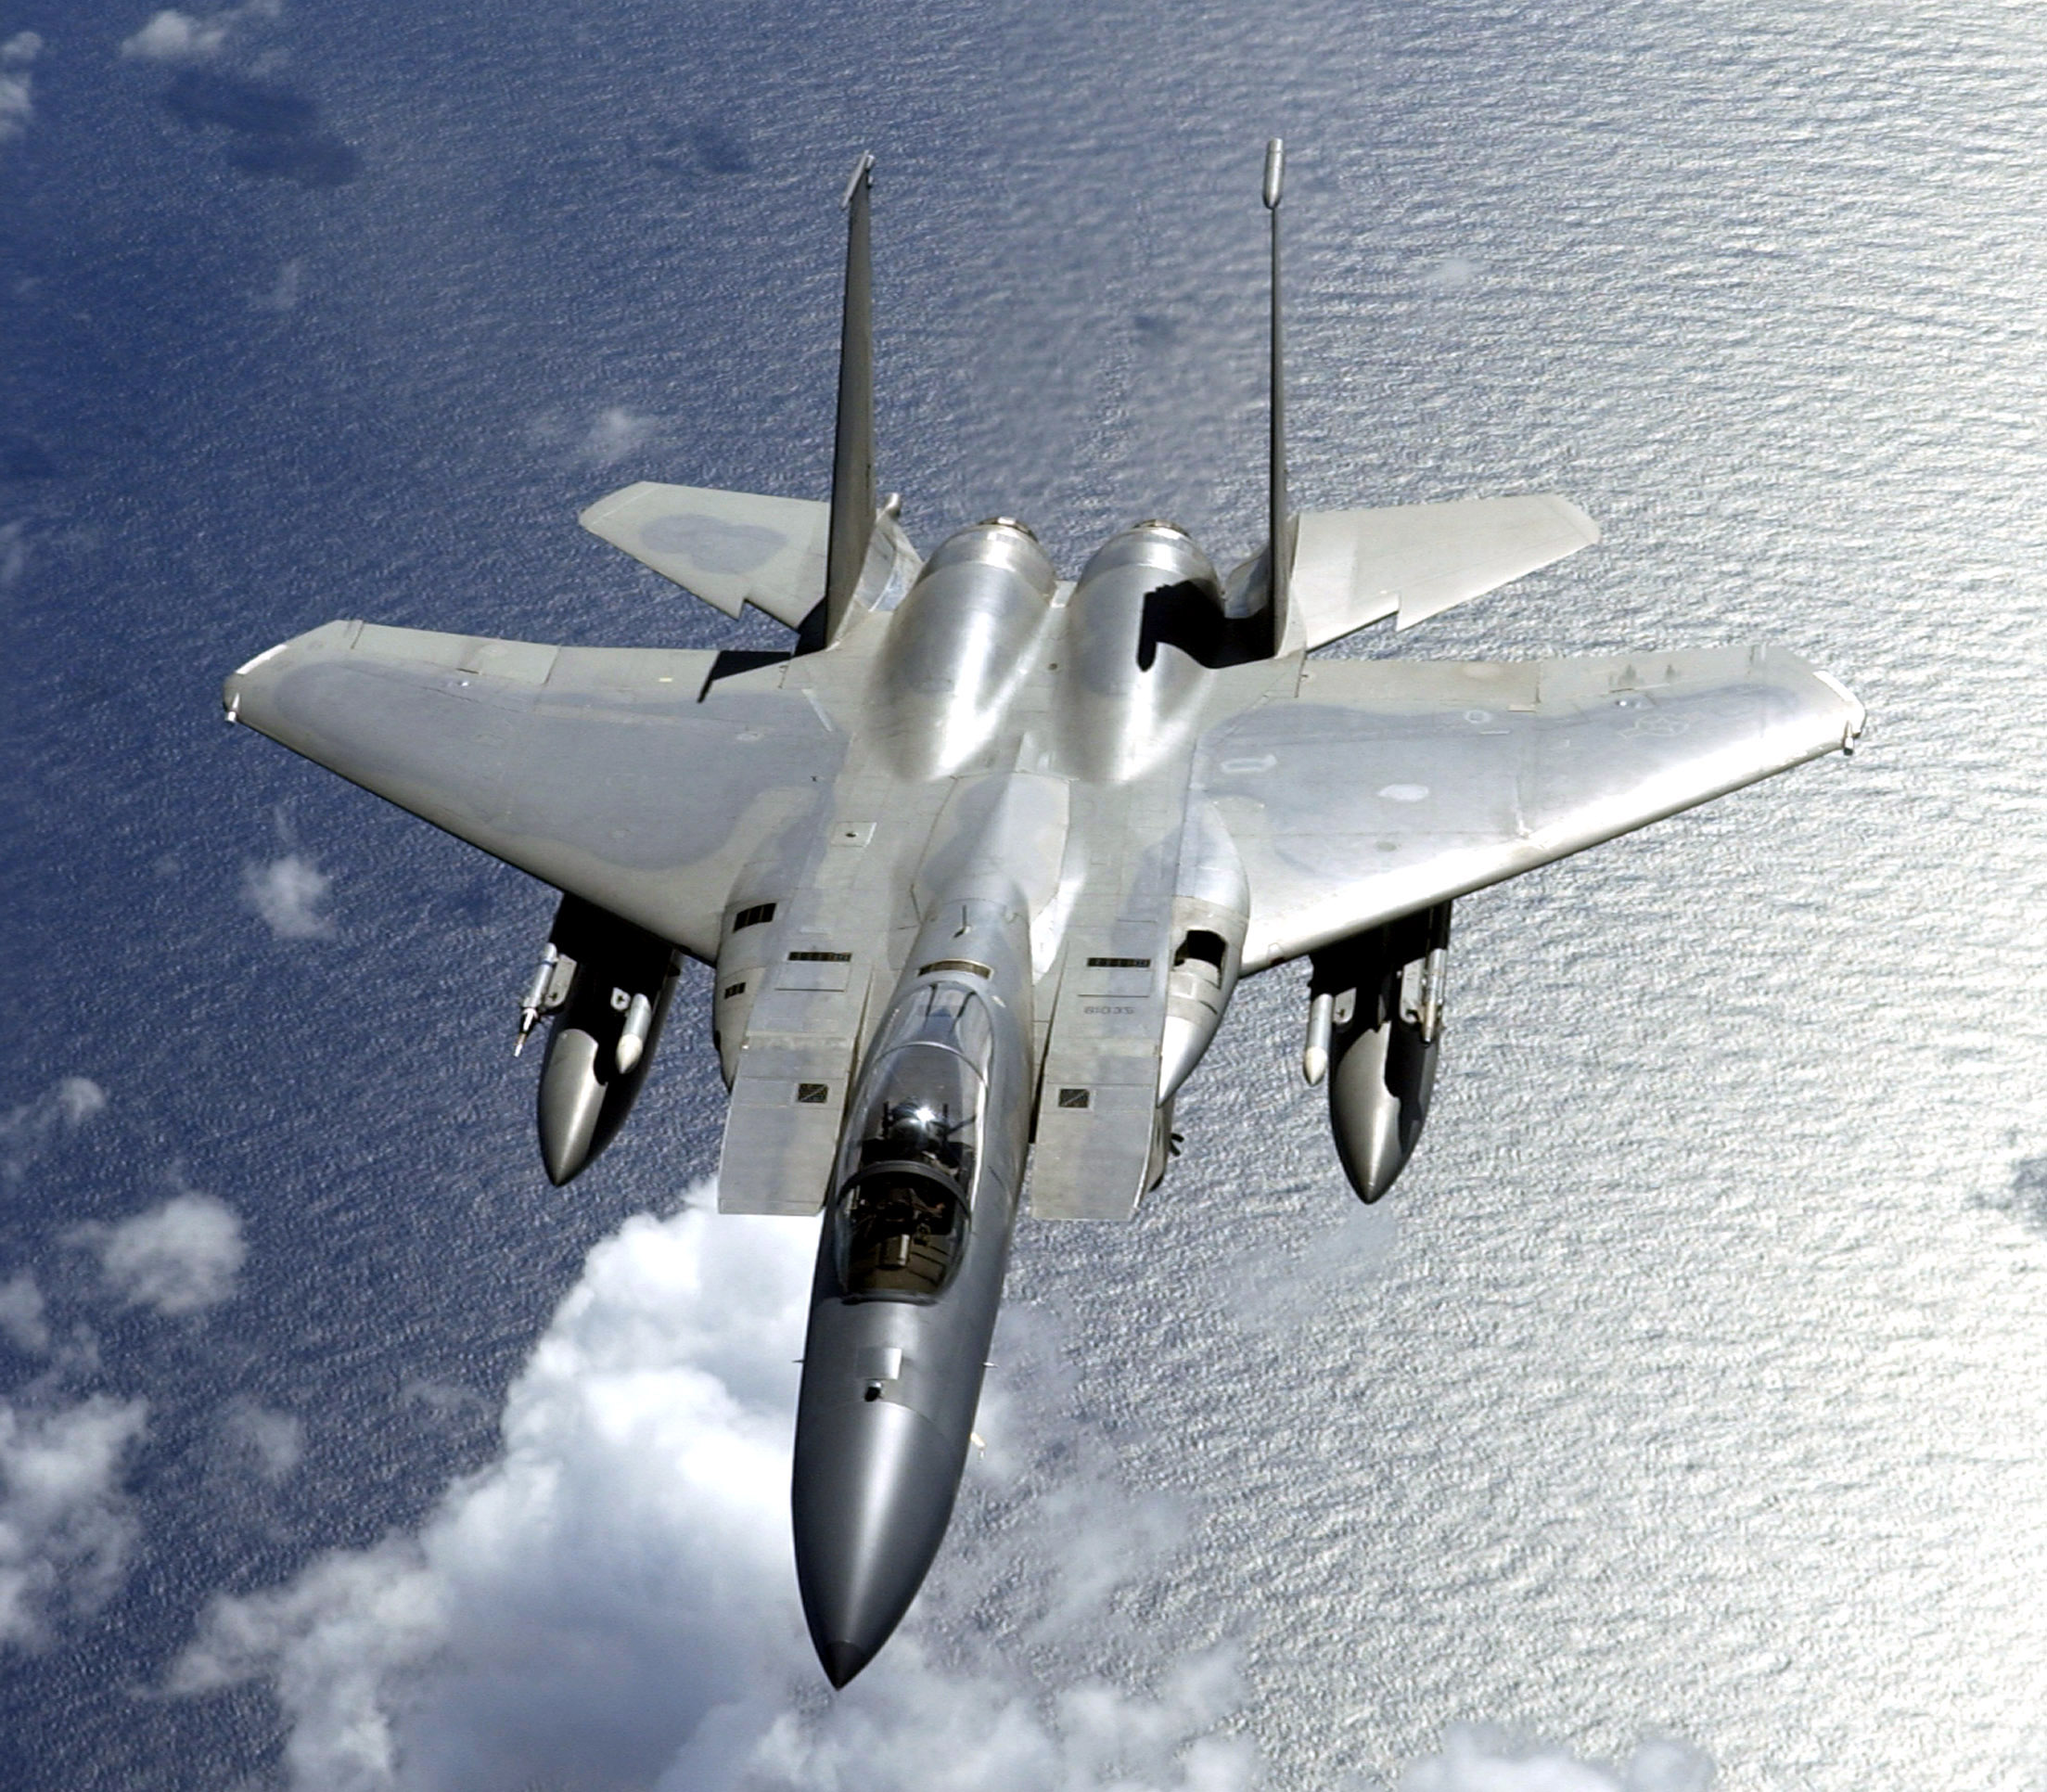 Αμερικανικό F-15 συνετρίβη στη θάλασσα της Ιαπωνίας